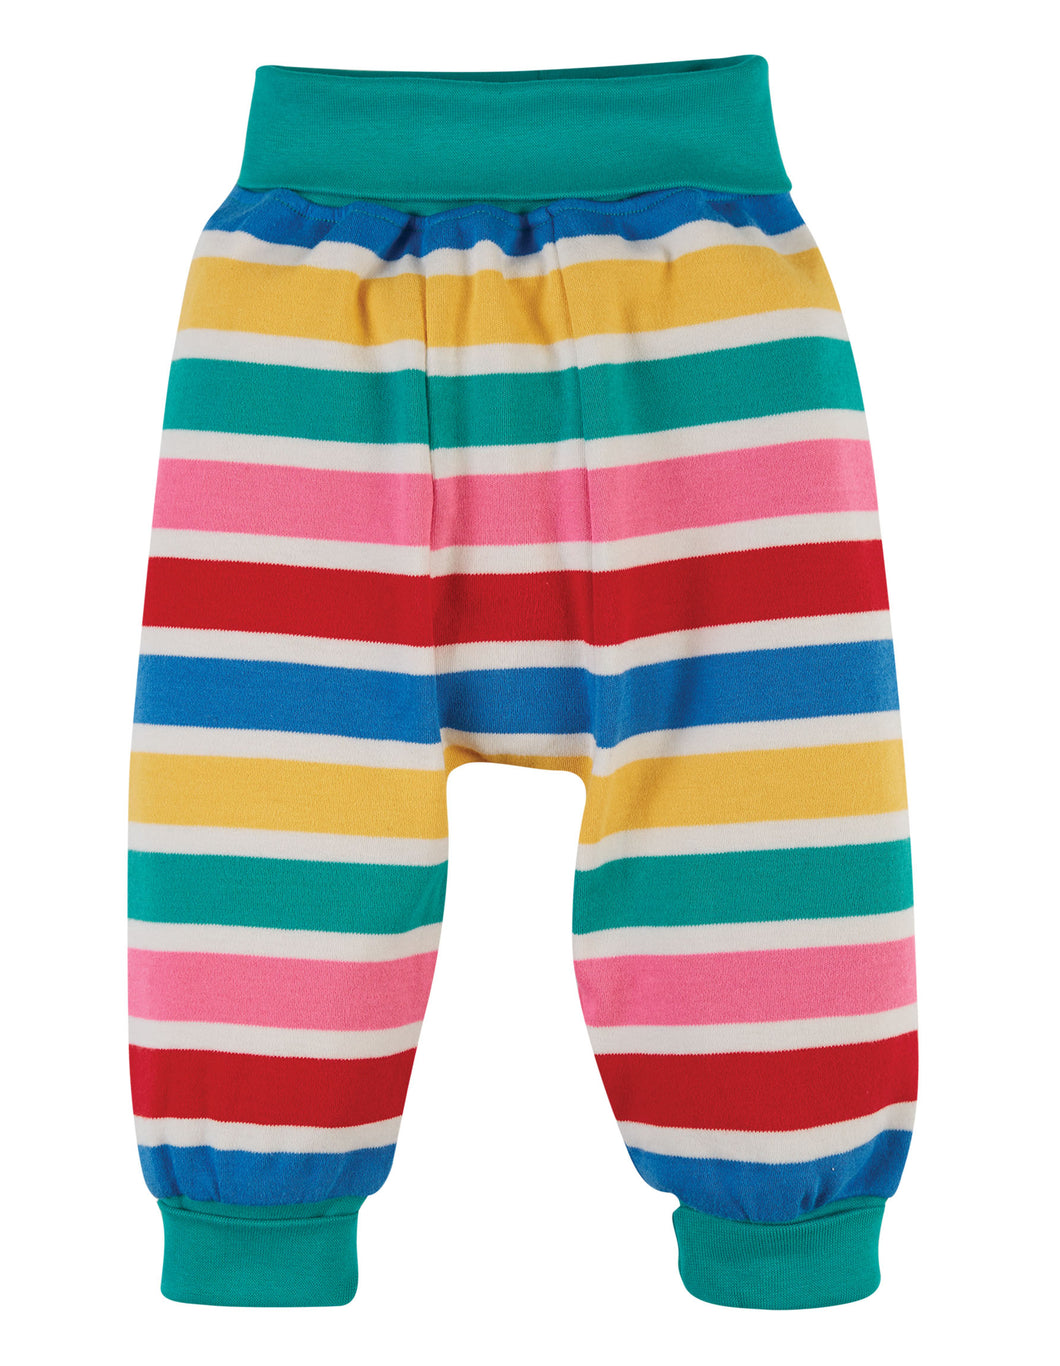 Parsnip Pants - Rainbow Multi Stripe